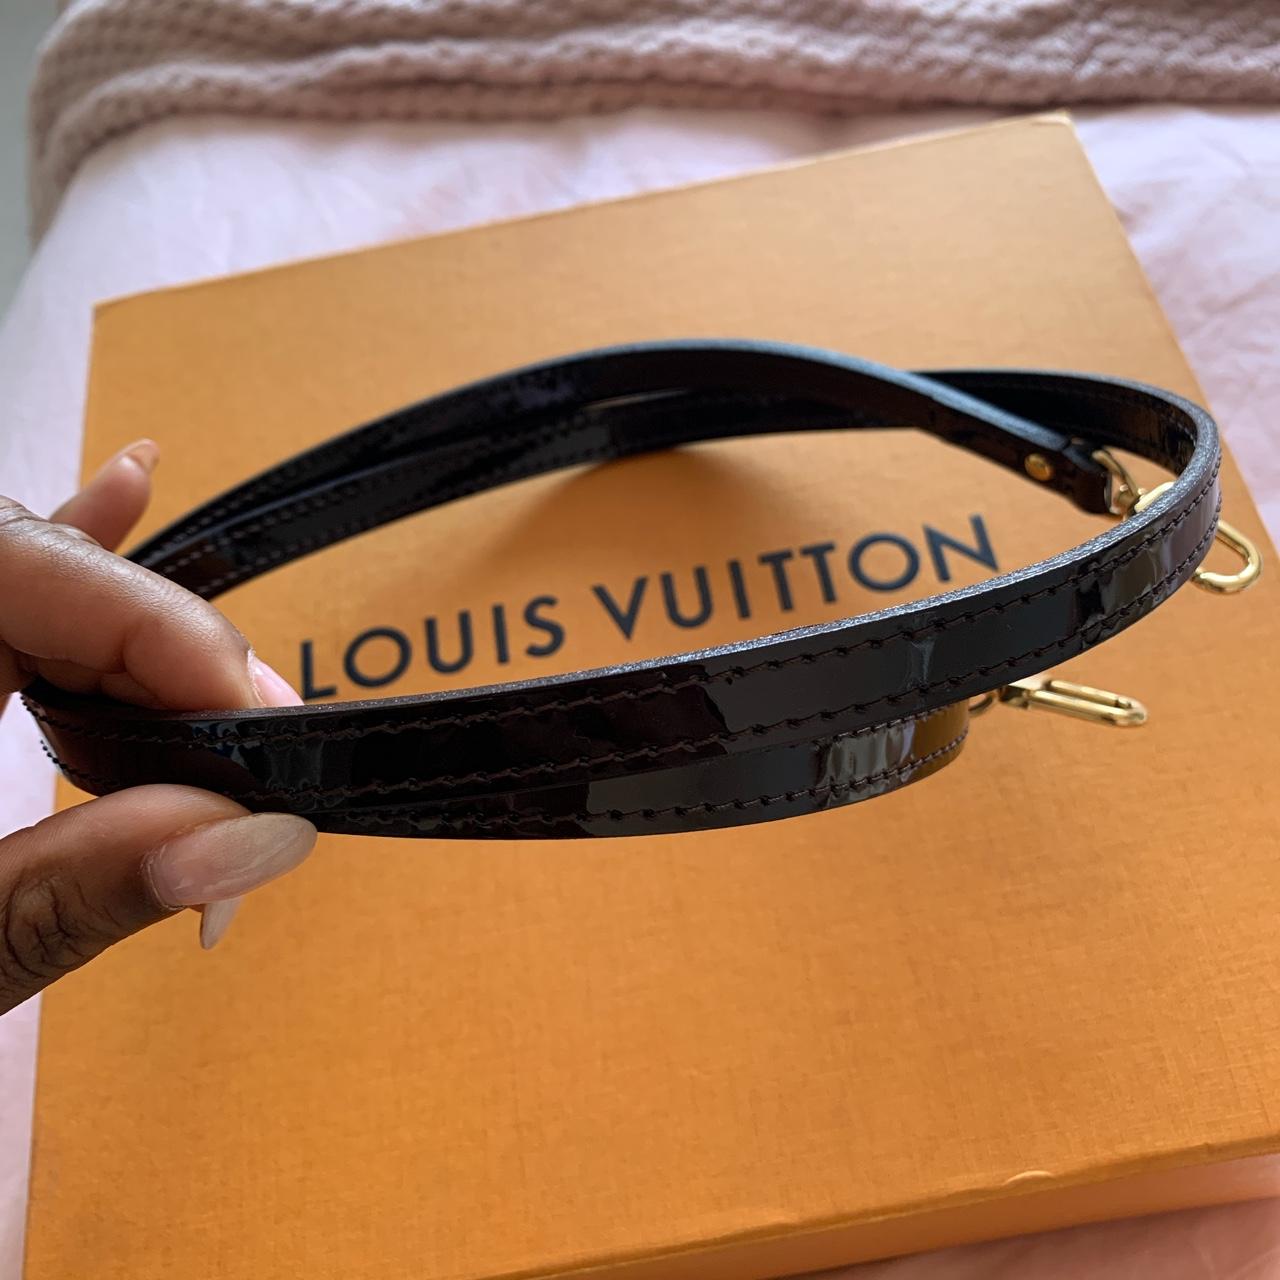 Authentic Louis Vuitton Alma BB in classic monogram - Depop